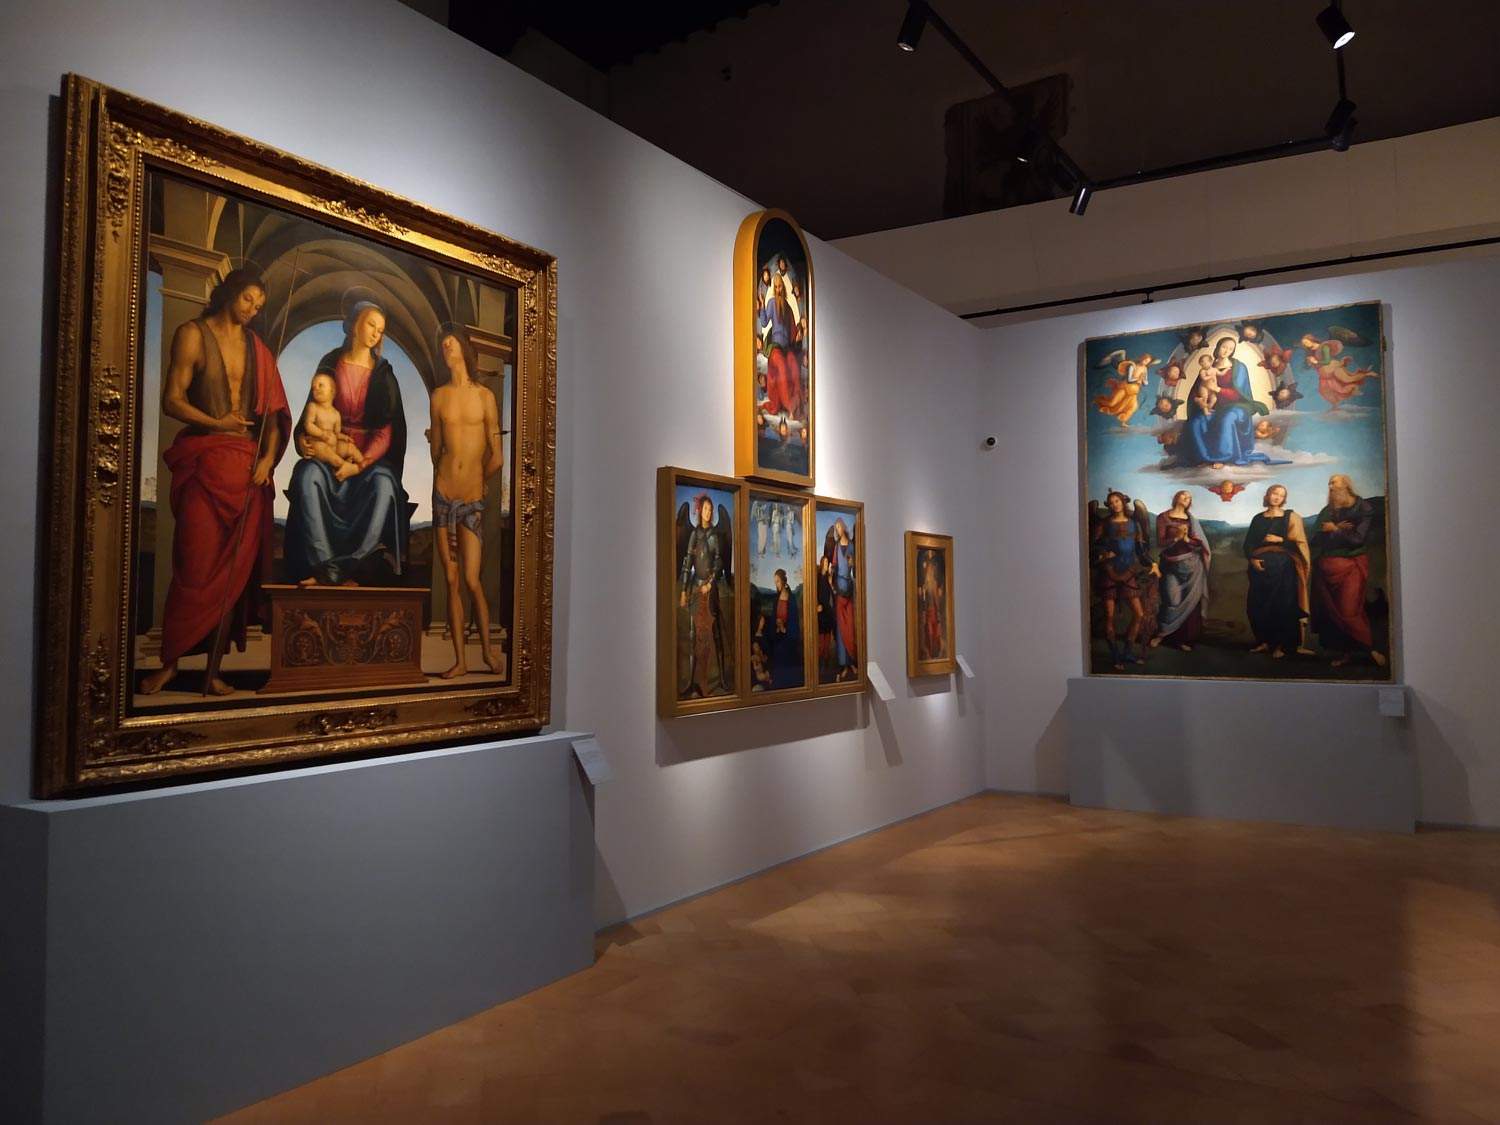 Grande successo per la mostra sul Perugino. Oltre 100.000 i visitatori